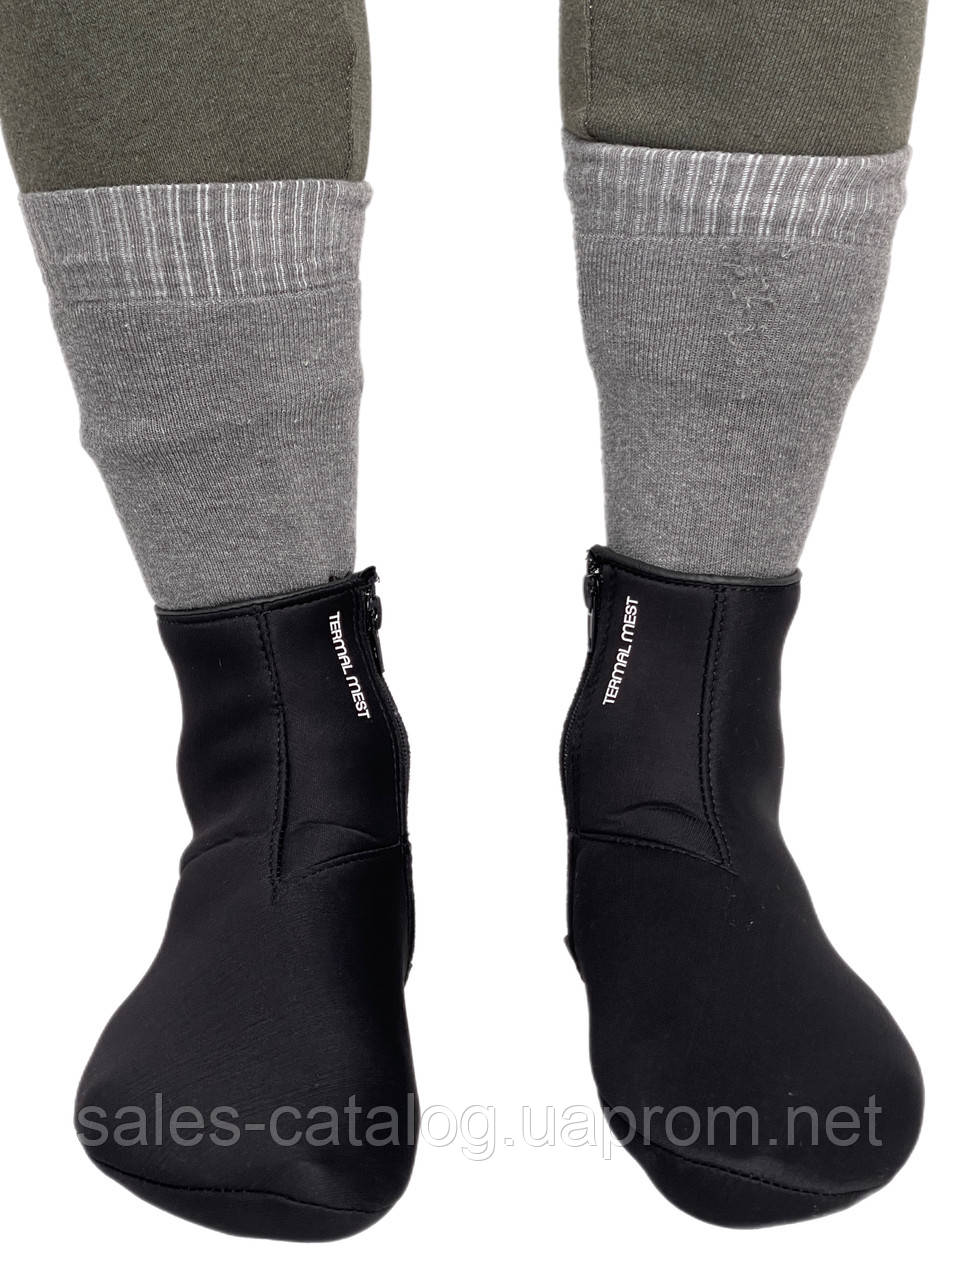 Термошкарпетки Intruder Thermal Mest чорні зі змійкою 41-42 (1887622187 1) SC, код: 7784110